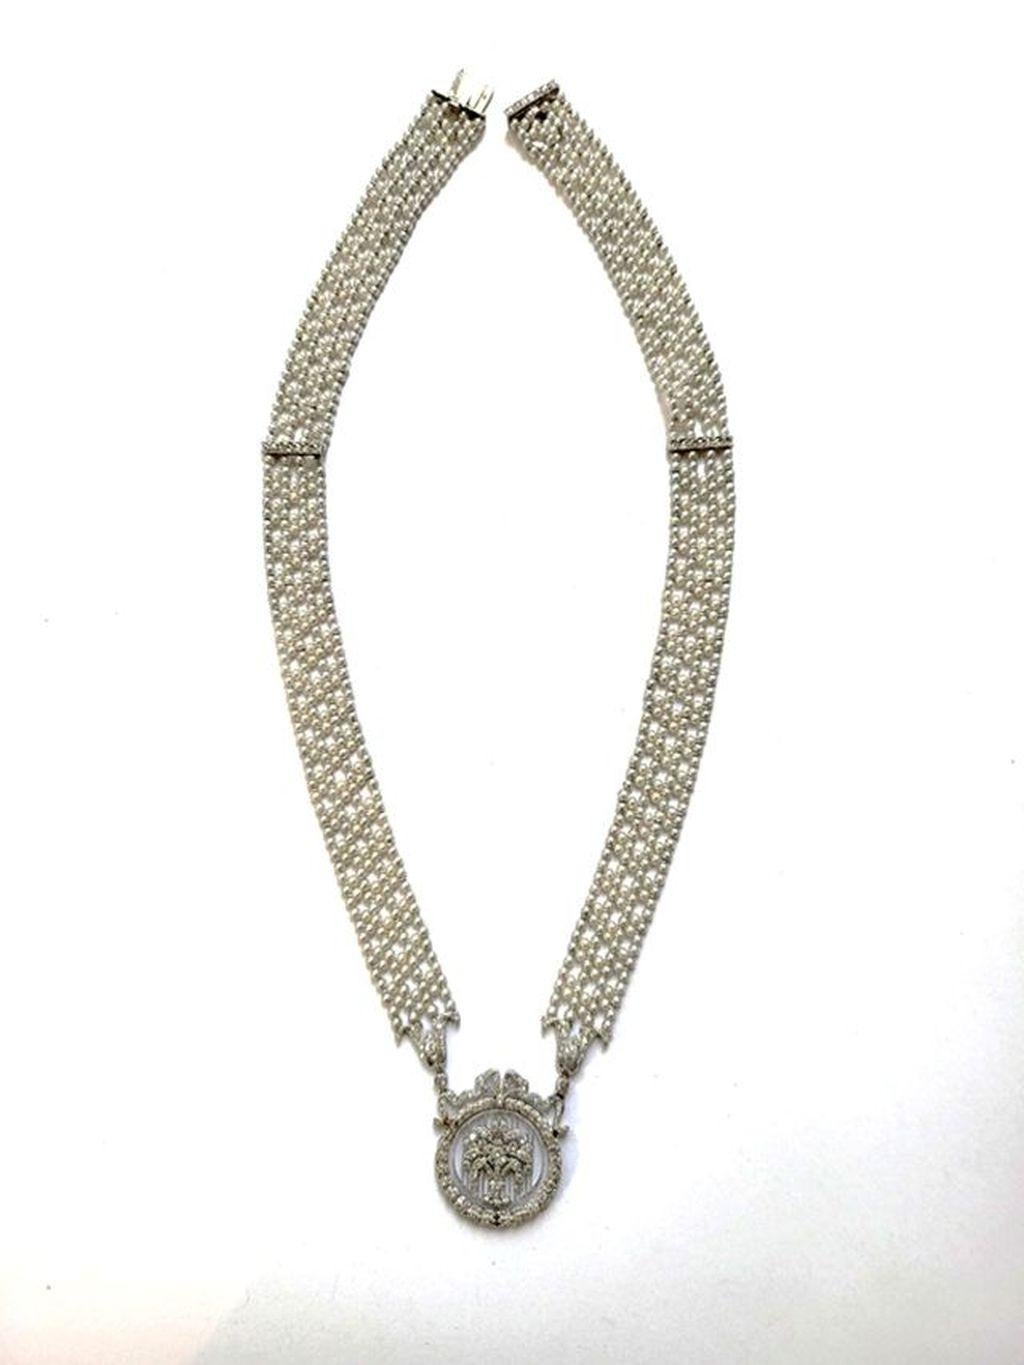 Eine exquisite Kreation der Schmuckherstellung!
Dieses edwardianische Collier besteht aus in Platin gefassten Diamanten im Rosenschliff und glänzenden Saatperlen, die in einem raffinierten Muster angeordnet sind. 
Das wunderschöne Gitterwerk des